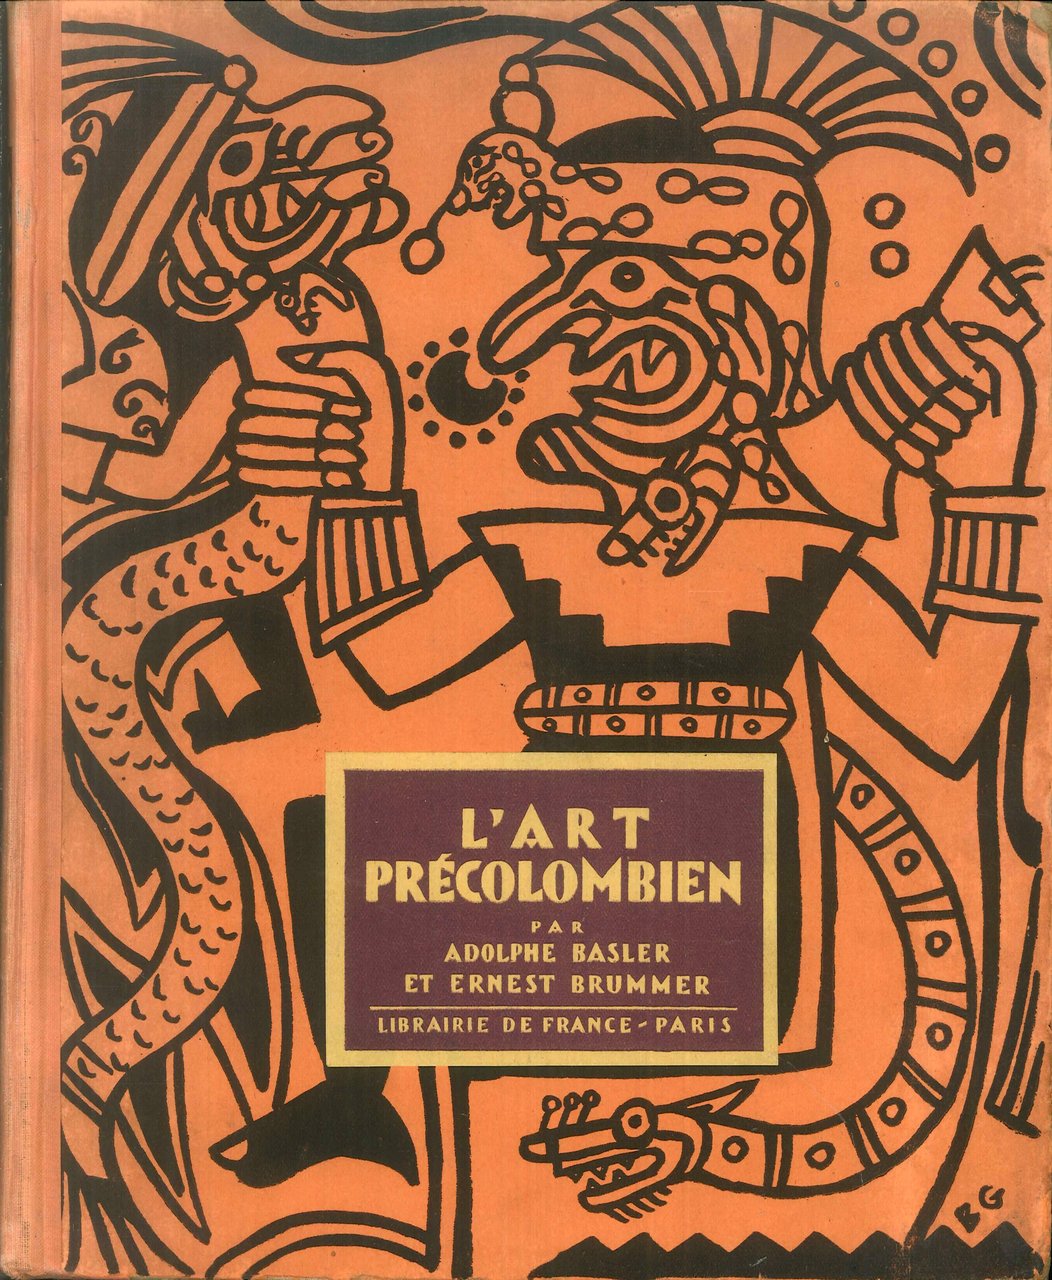 L'art précolombien, 1928